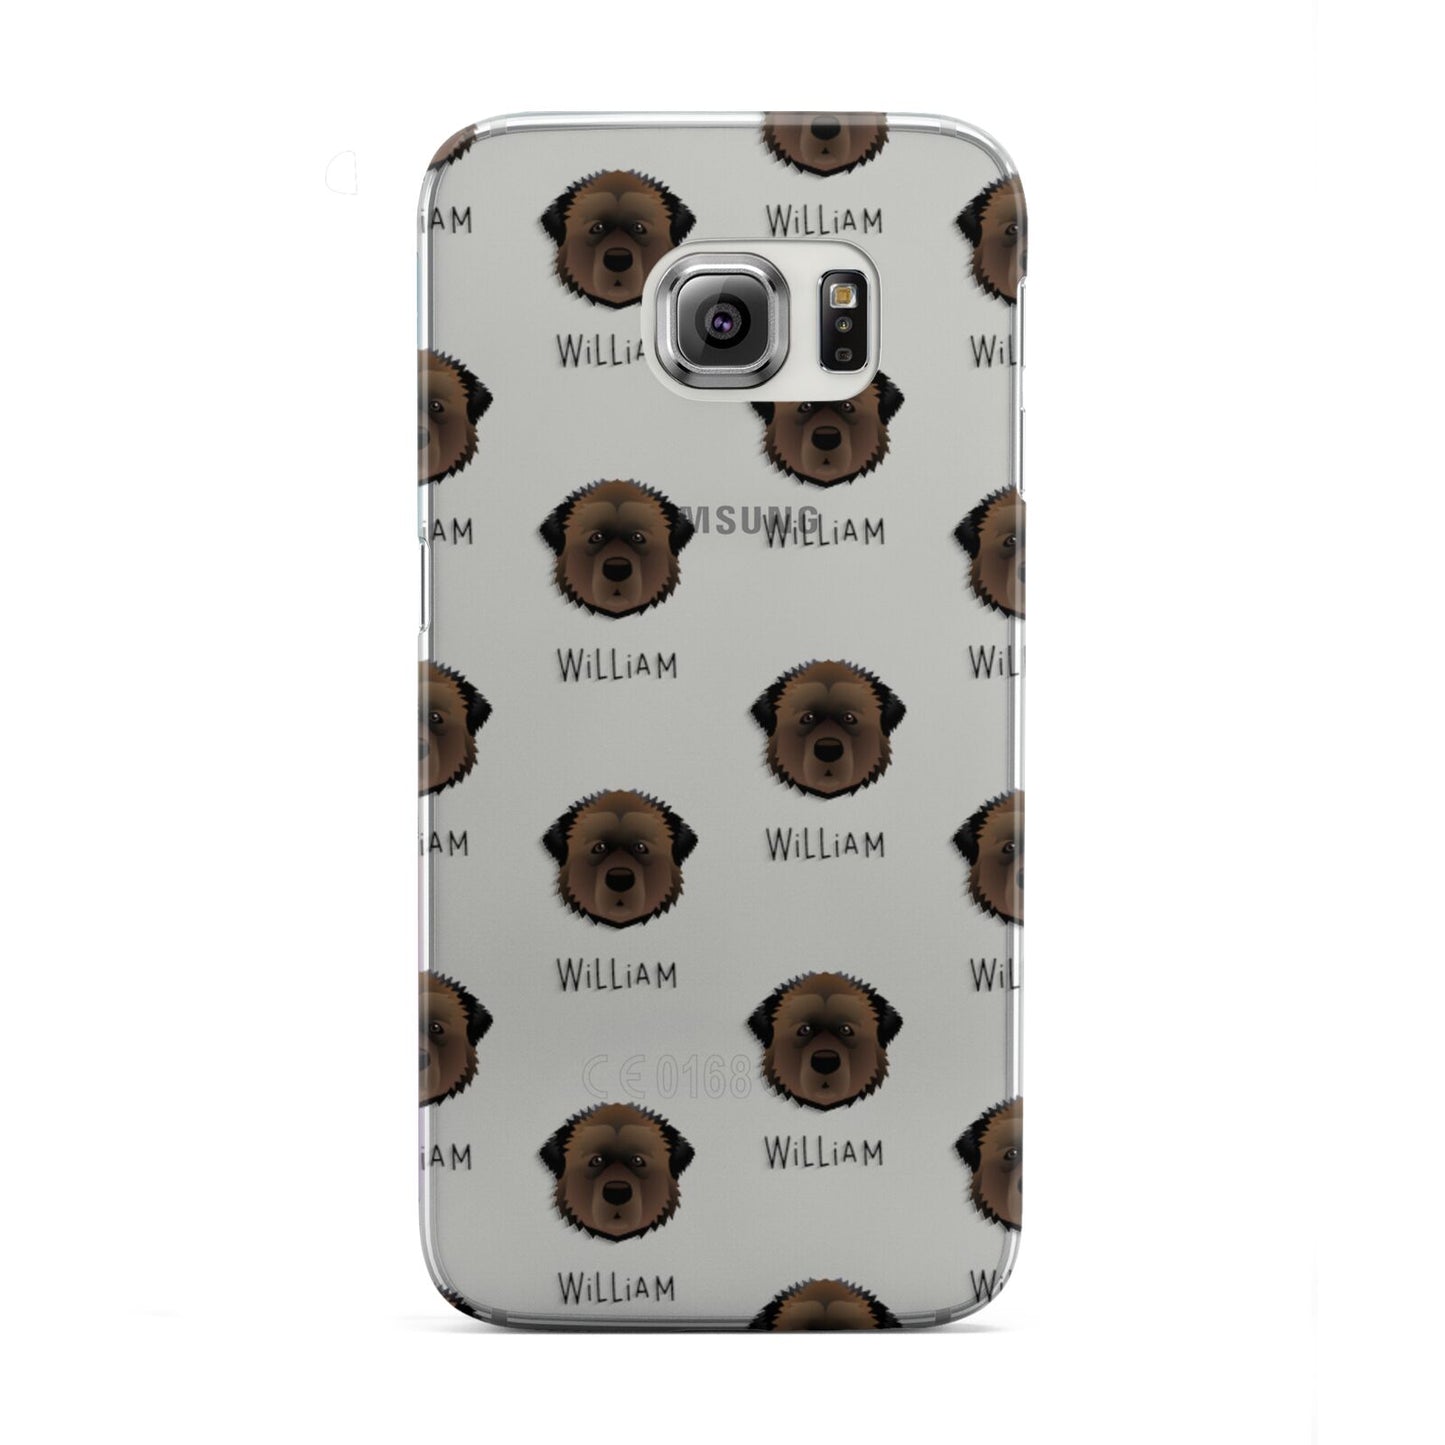 Estrela Mountain Dog Icon with Name Samsung Galaxy S6 Edge Case